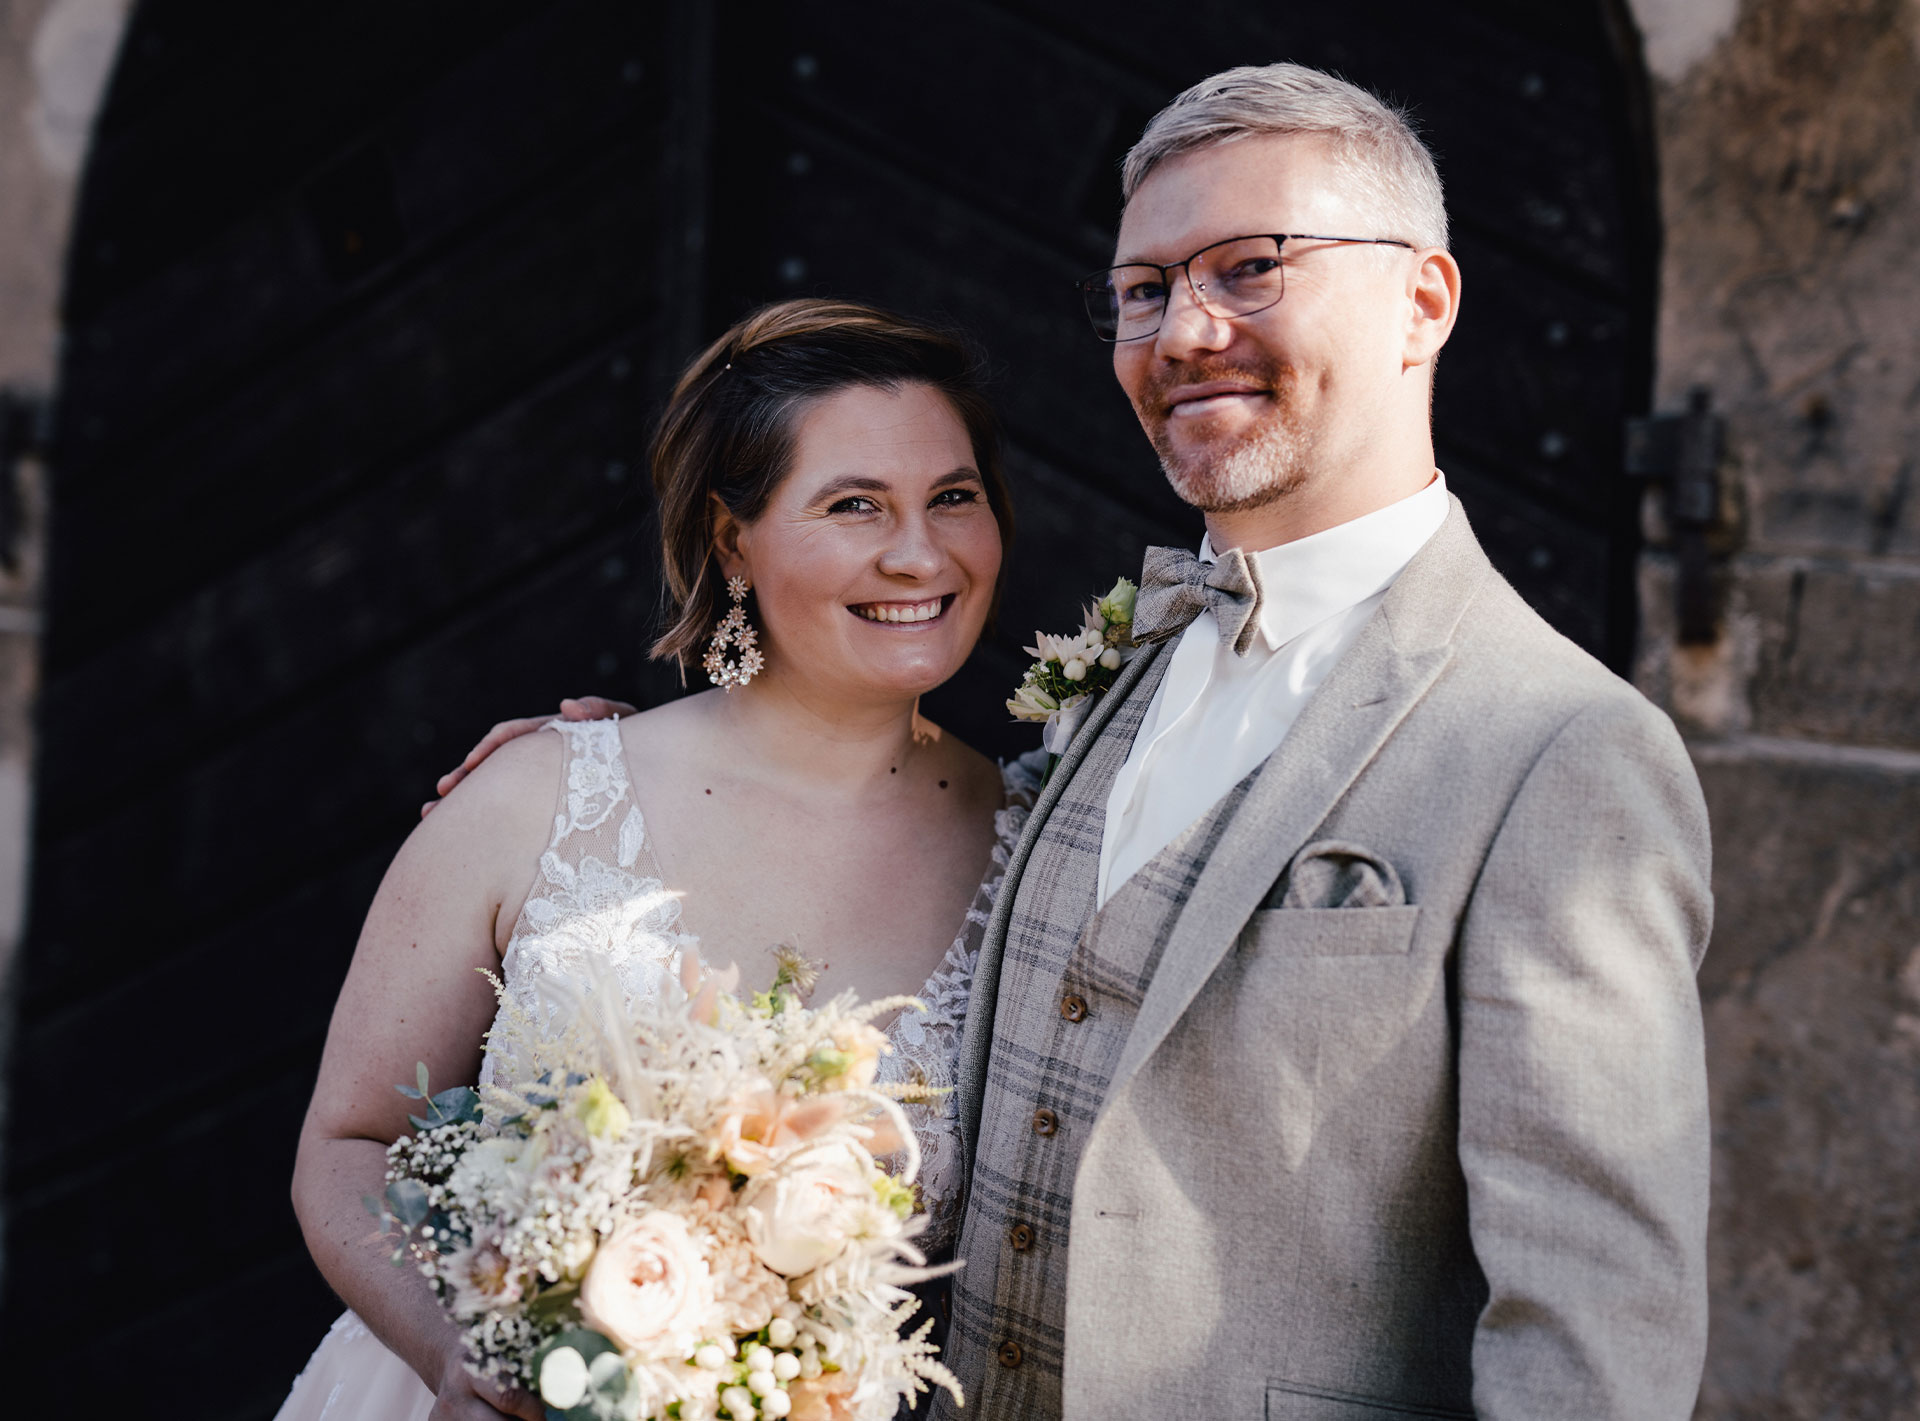 Ein glückliches Brautpaar in eleganter Hochzeitskleidung steht lächelnd vor einer dunklen Holztür, die Braut hält einen Blumenstrauß.